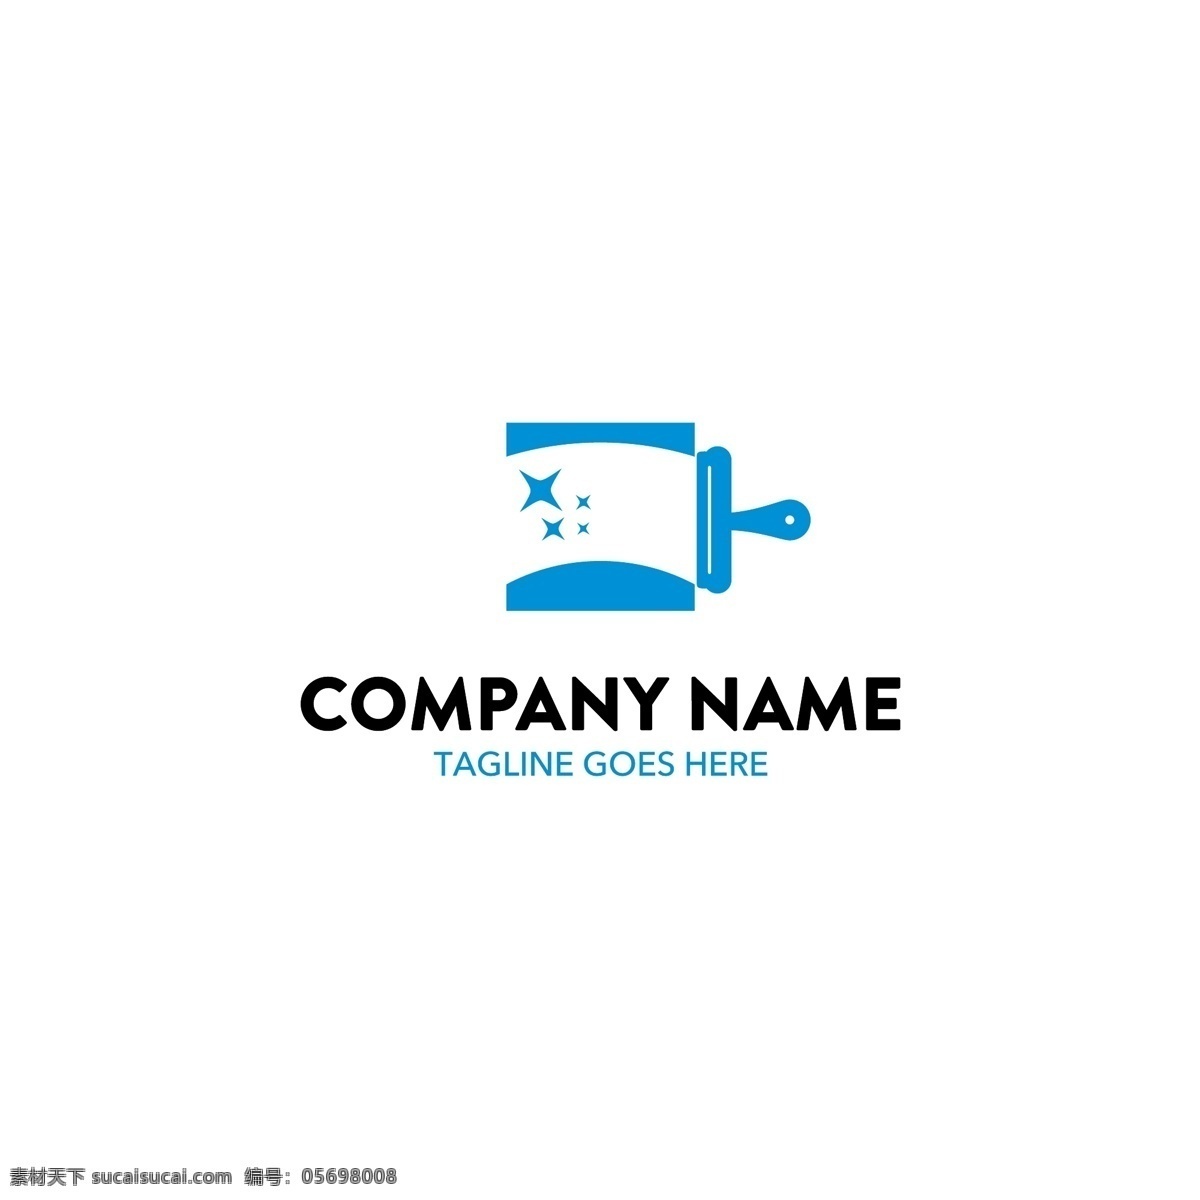 时尚 企业 主题 logo 矢量 logo设计 创意logo 图形标志 设计商标 设计企业 公司 logologo 标志 图标 白色